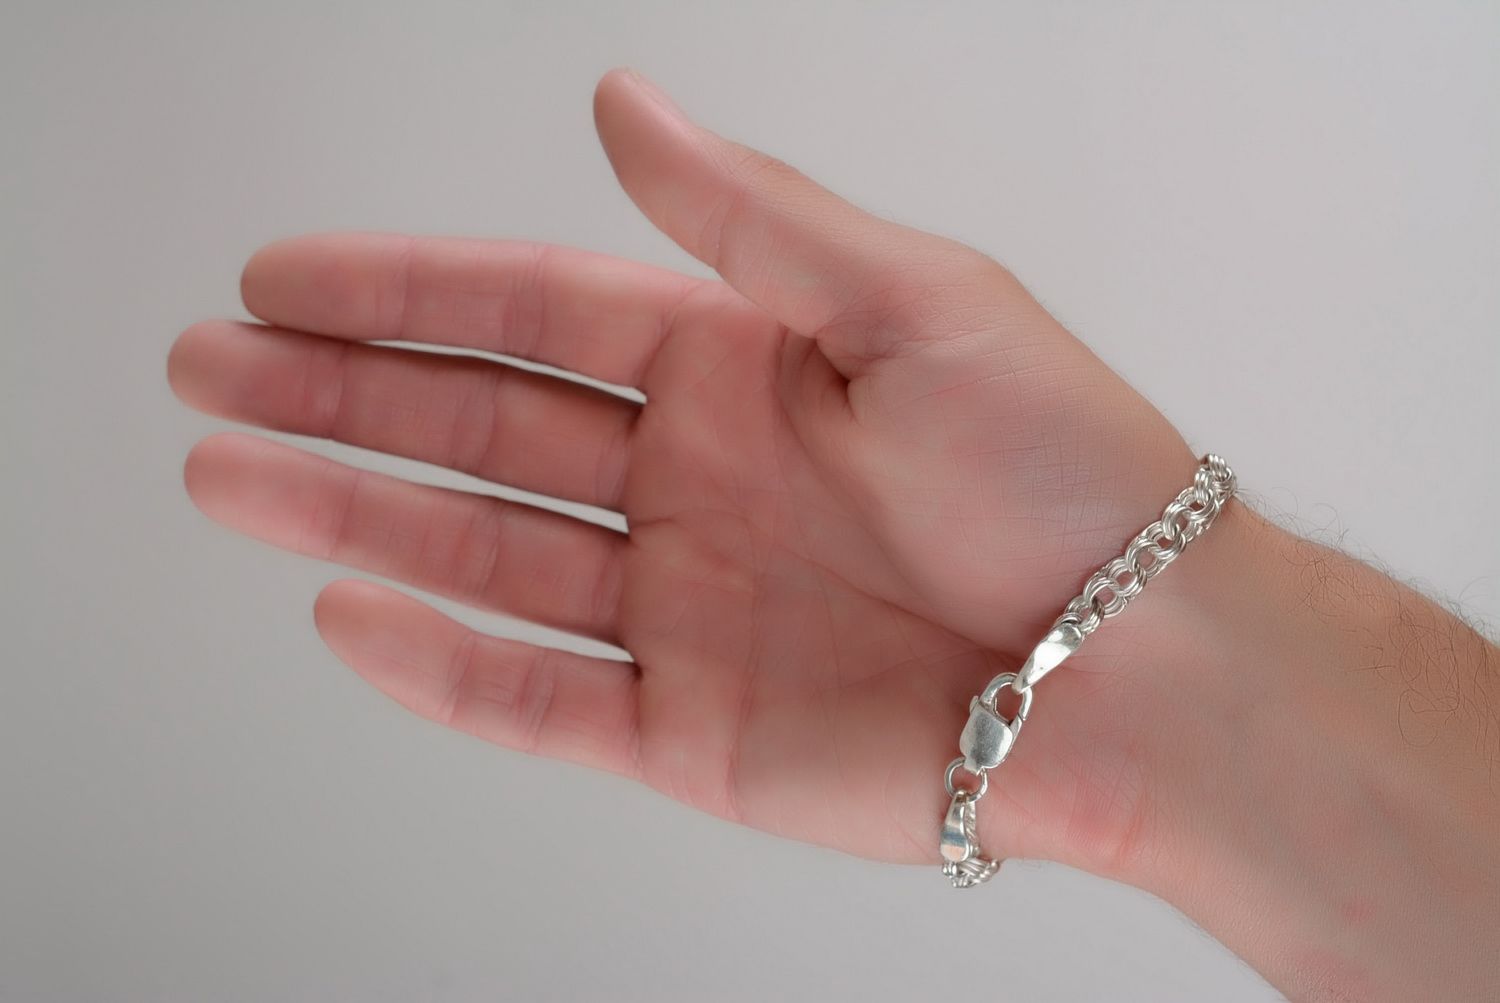 Silver bracelet photo 2